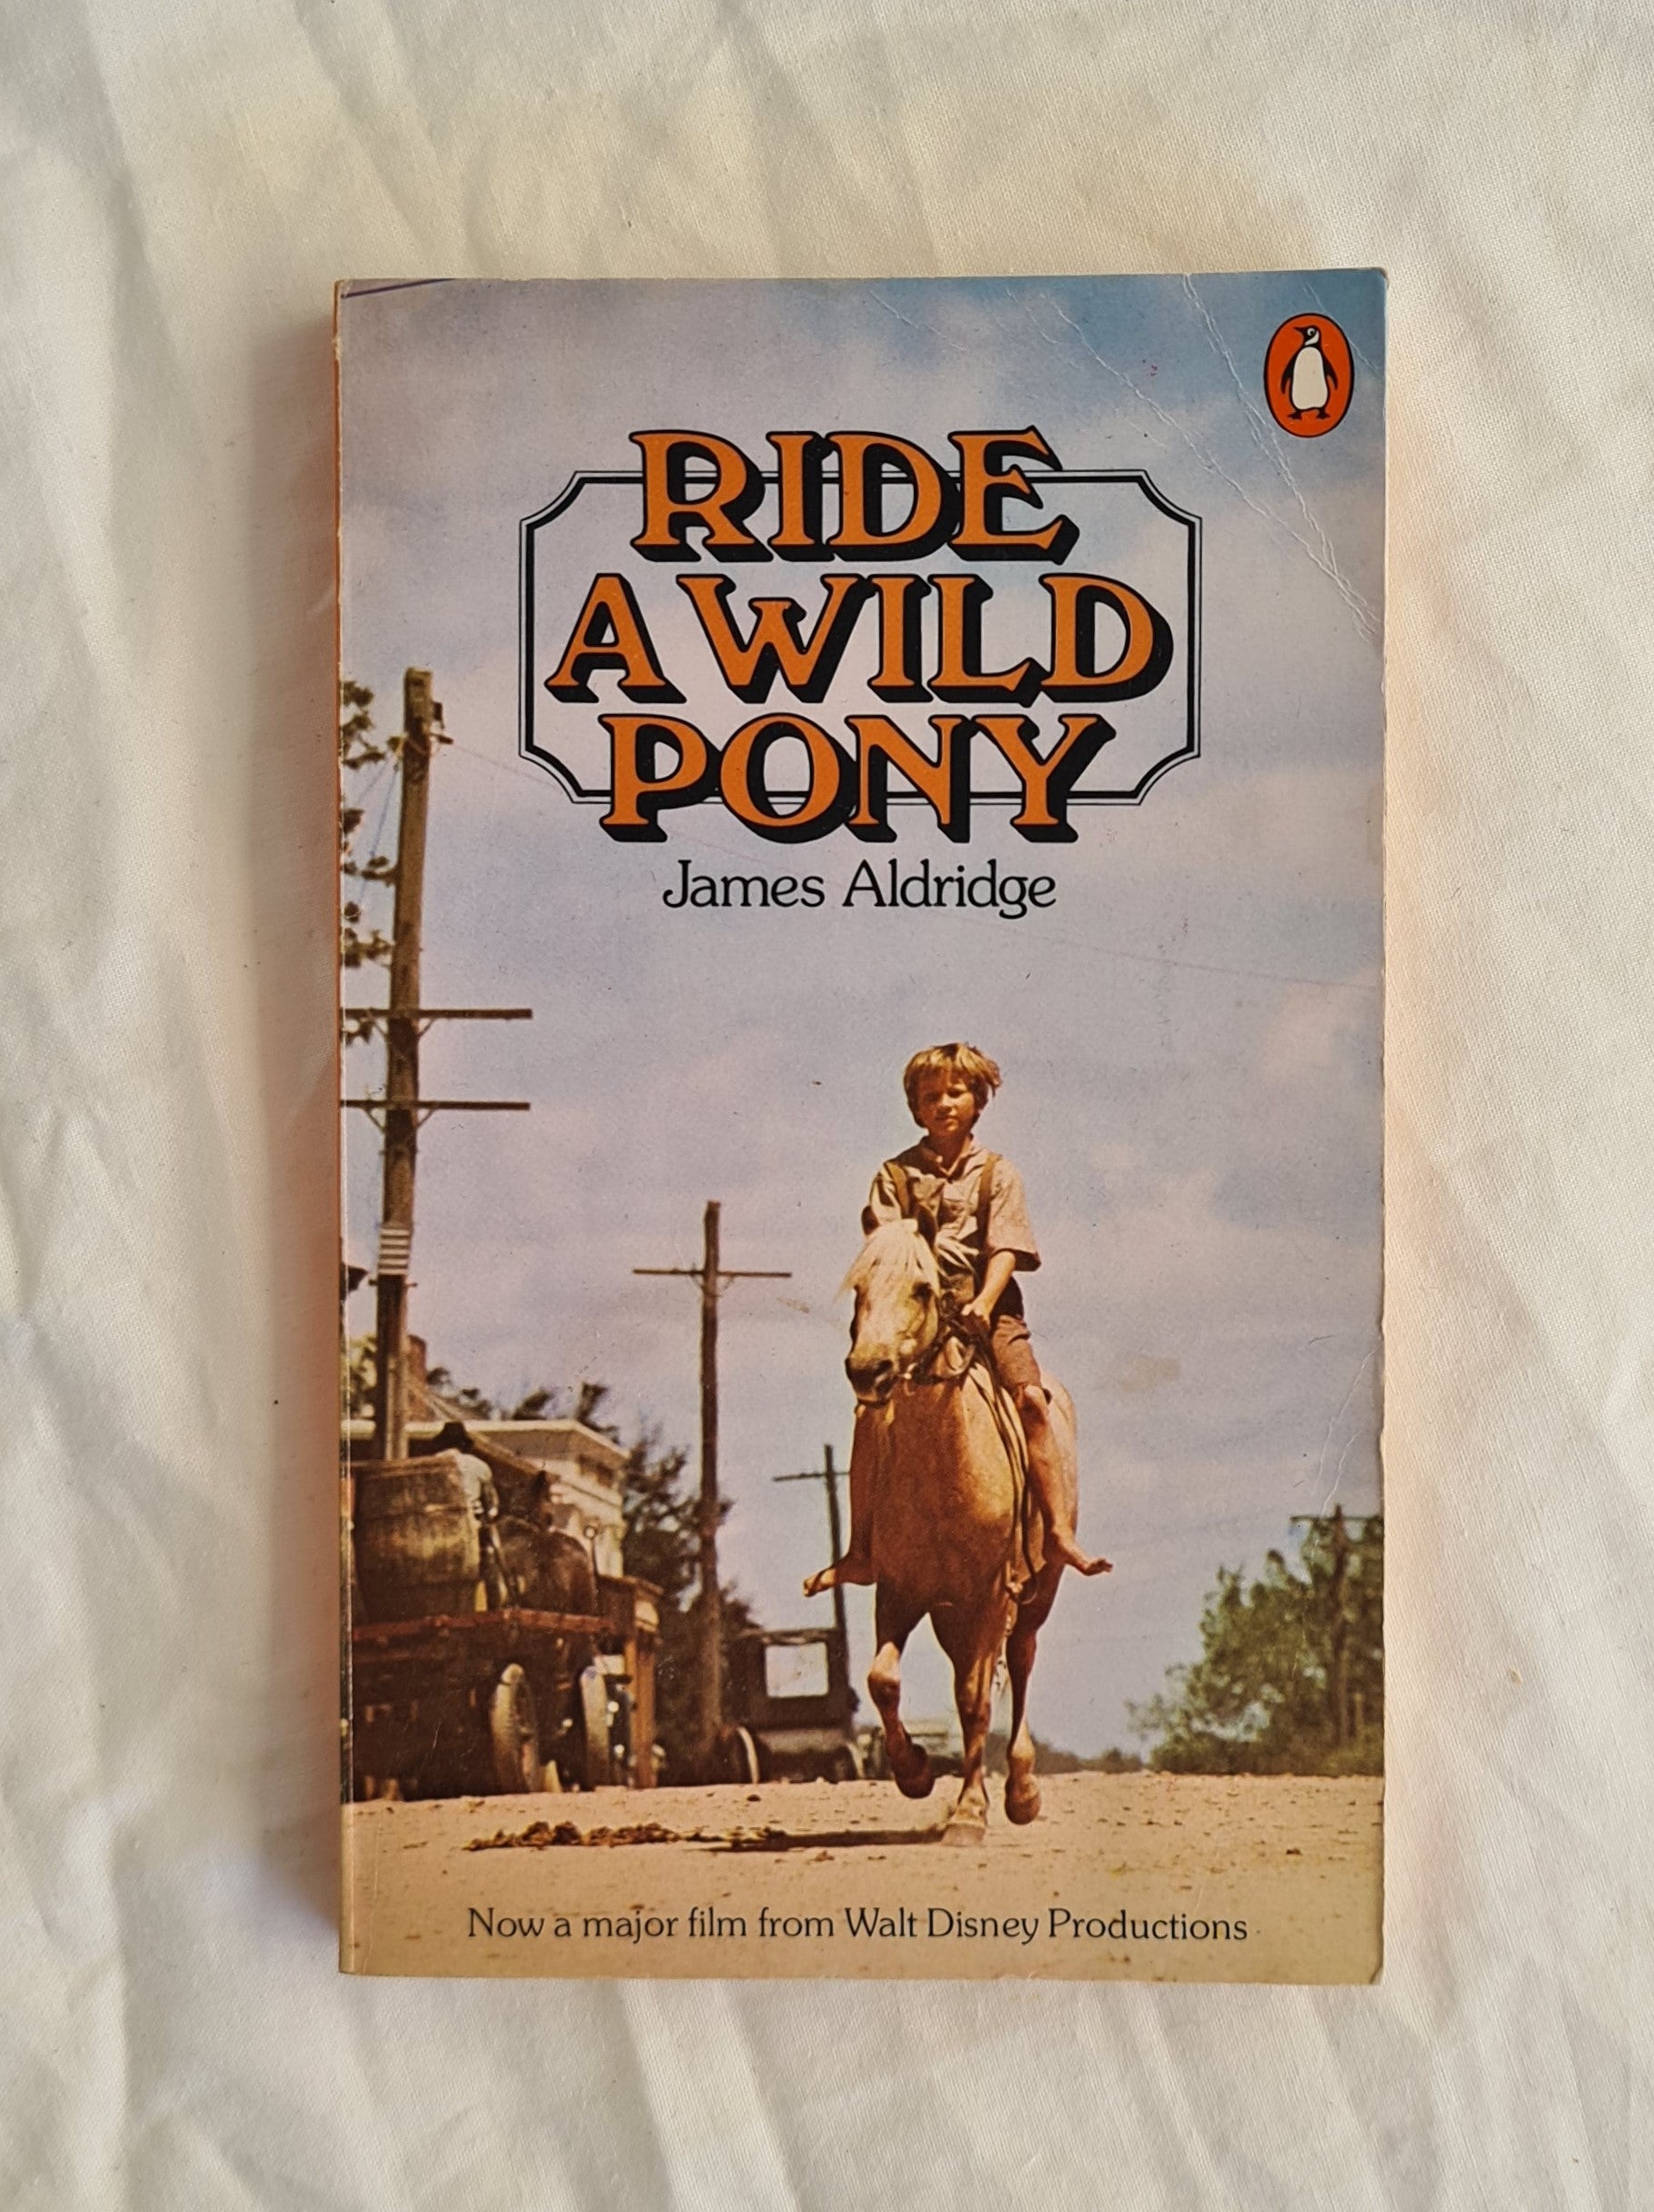 Ride a Wild Pony by James Aldridge